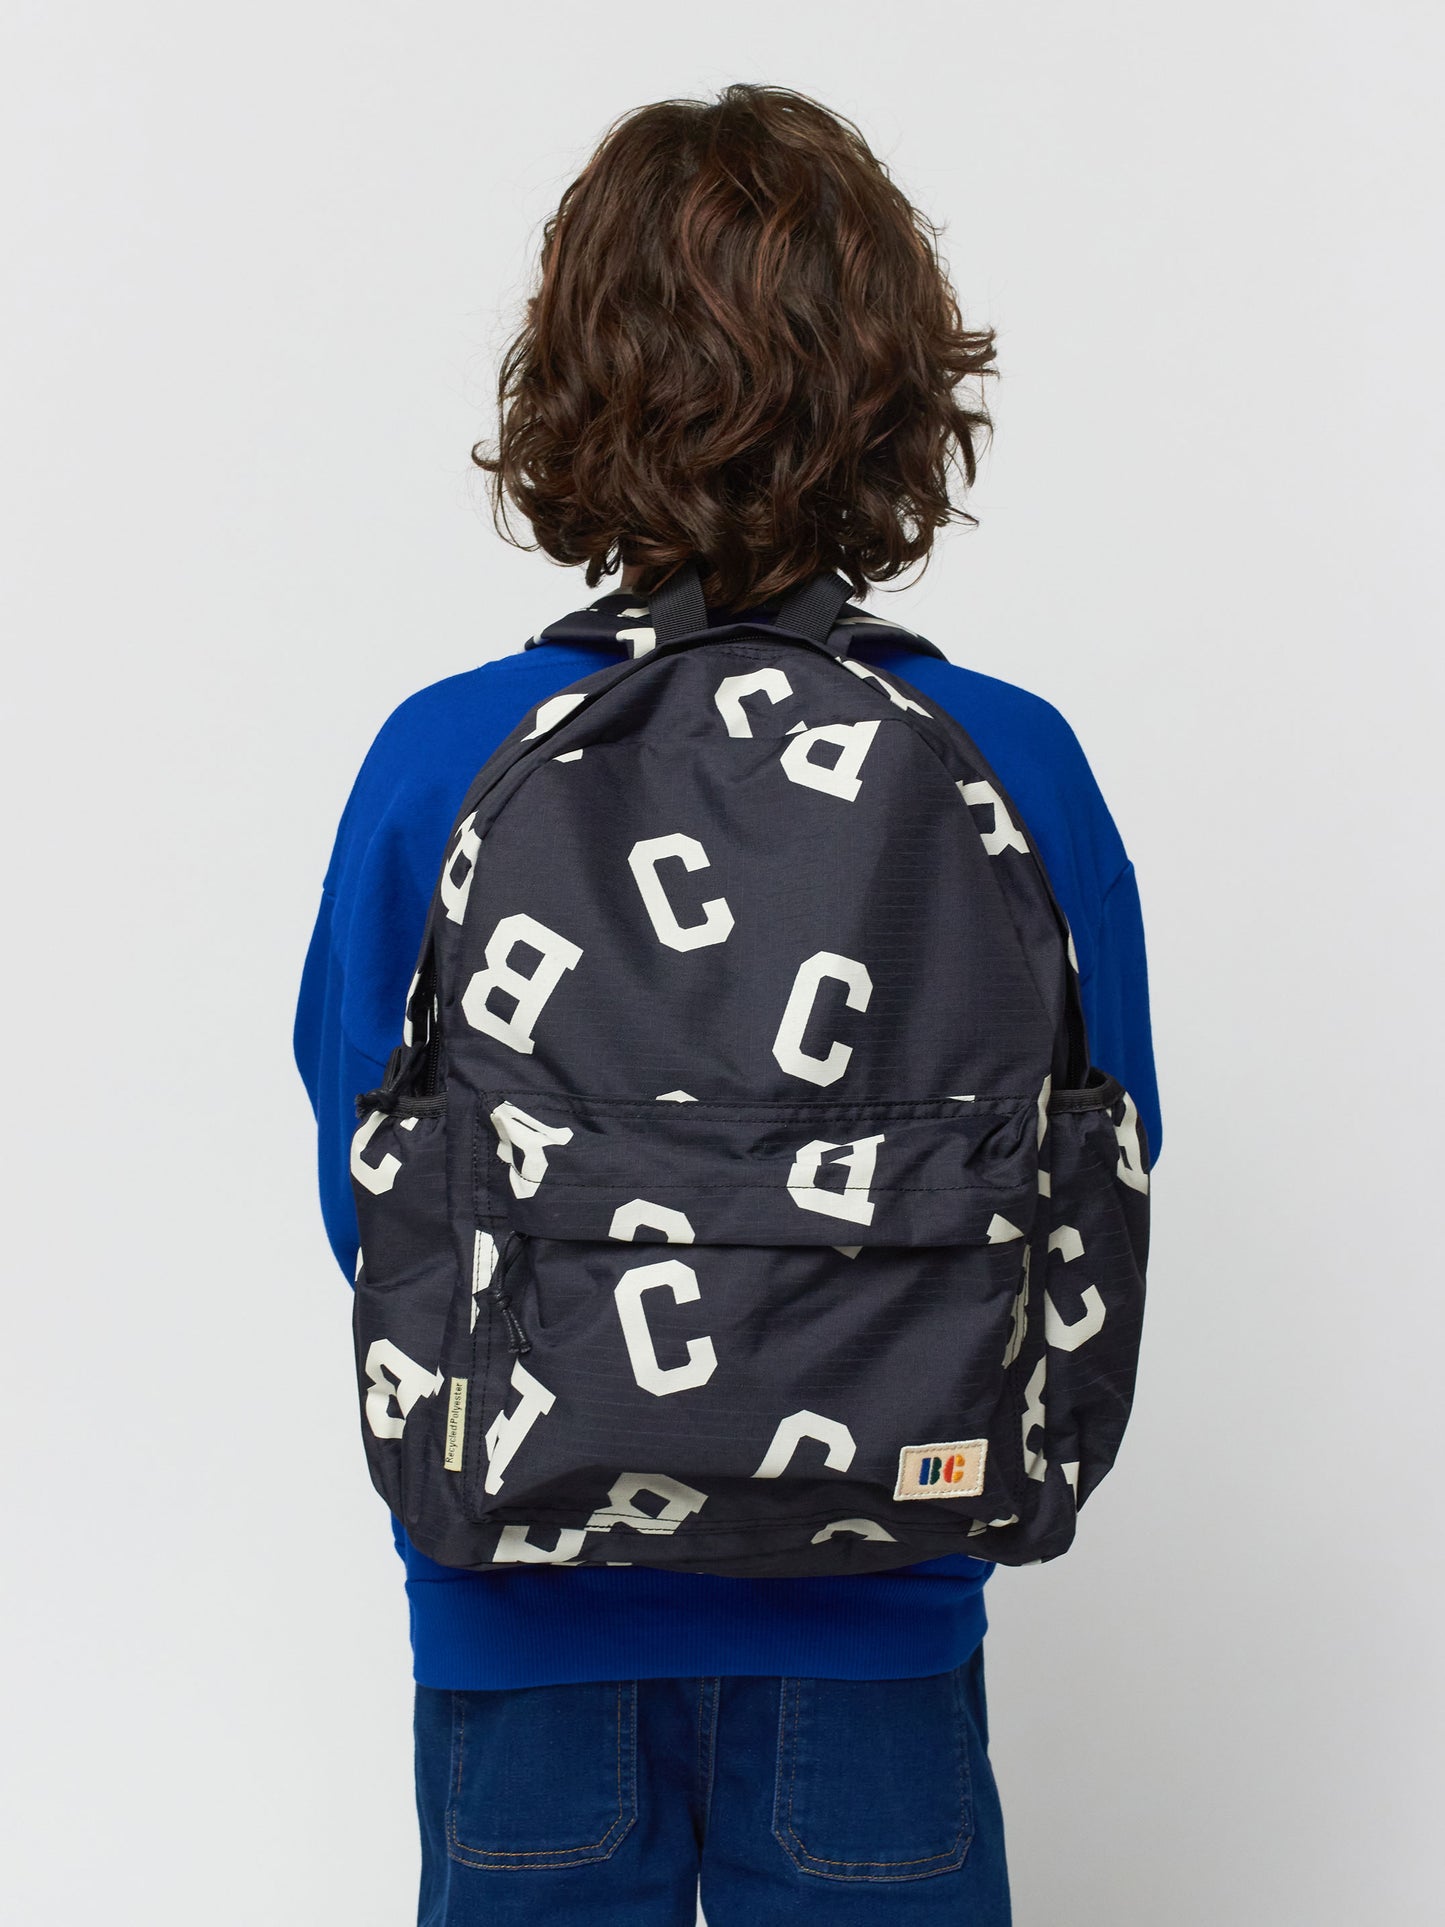 BC Grey backpack